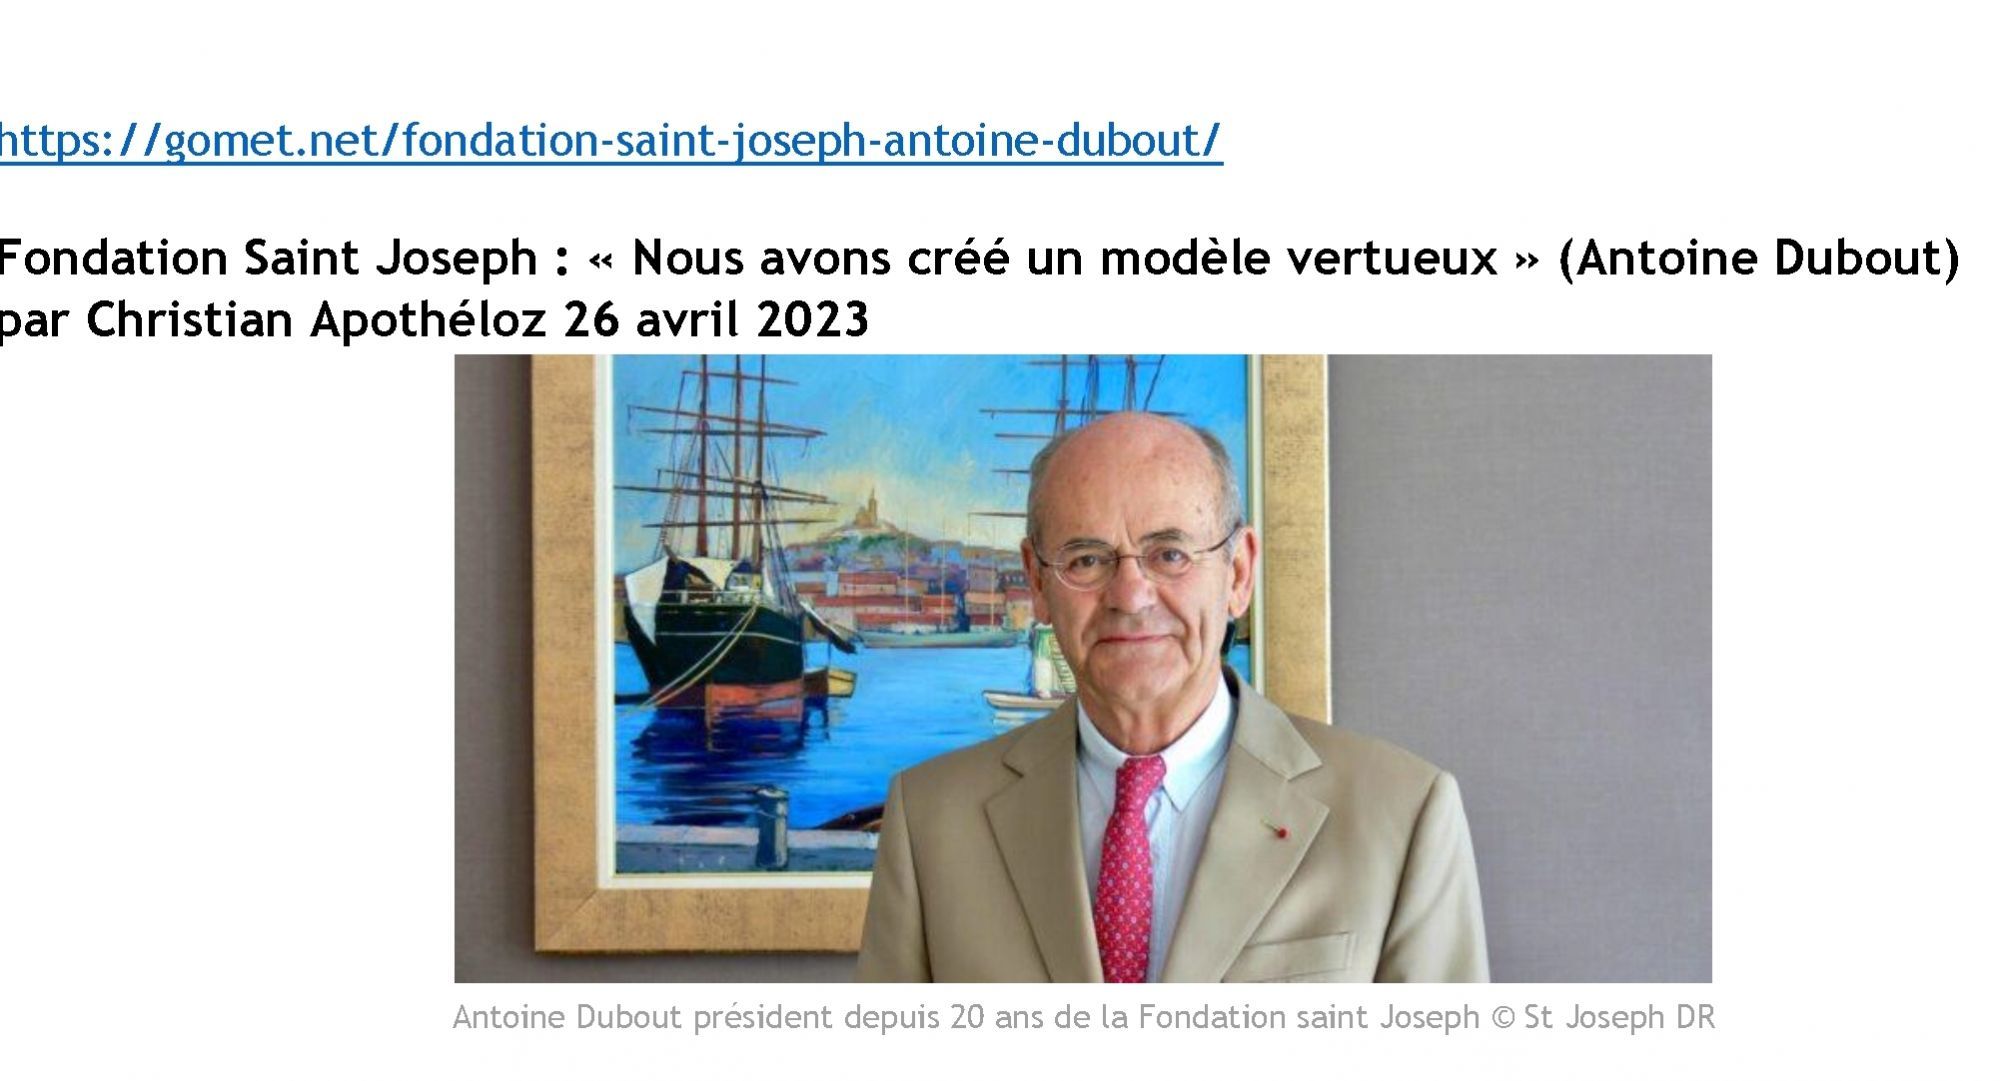 Fondation Saint Joseph : " Nous avons créé un modèle vertueux " (Antoine Dubout) : Gomet .net - 26/04/2023 